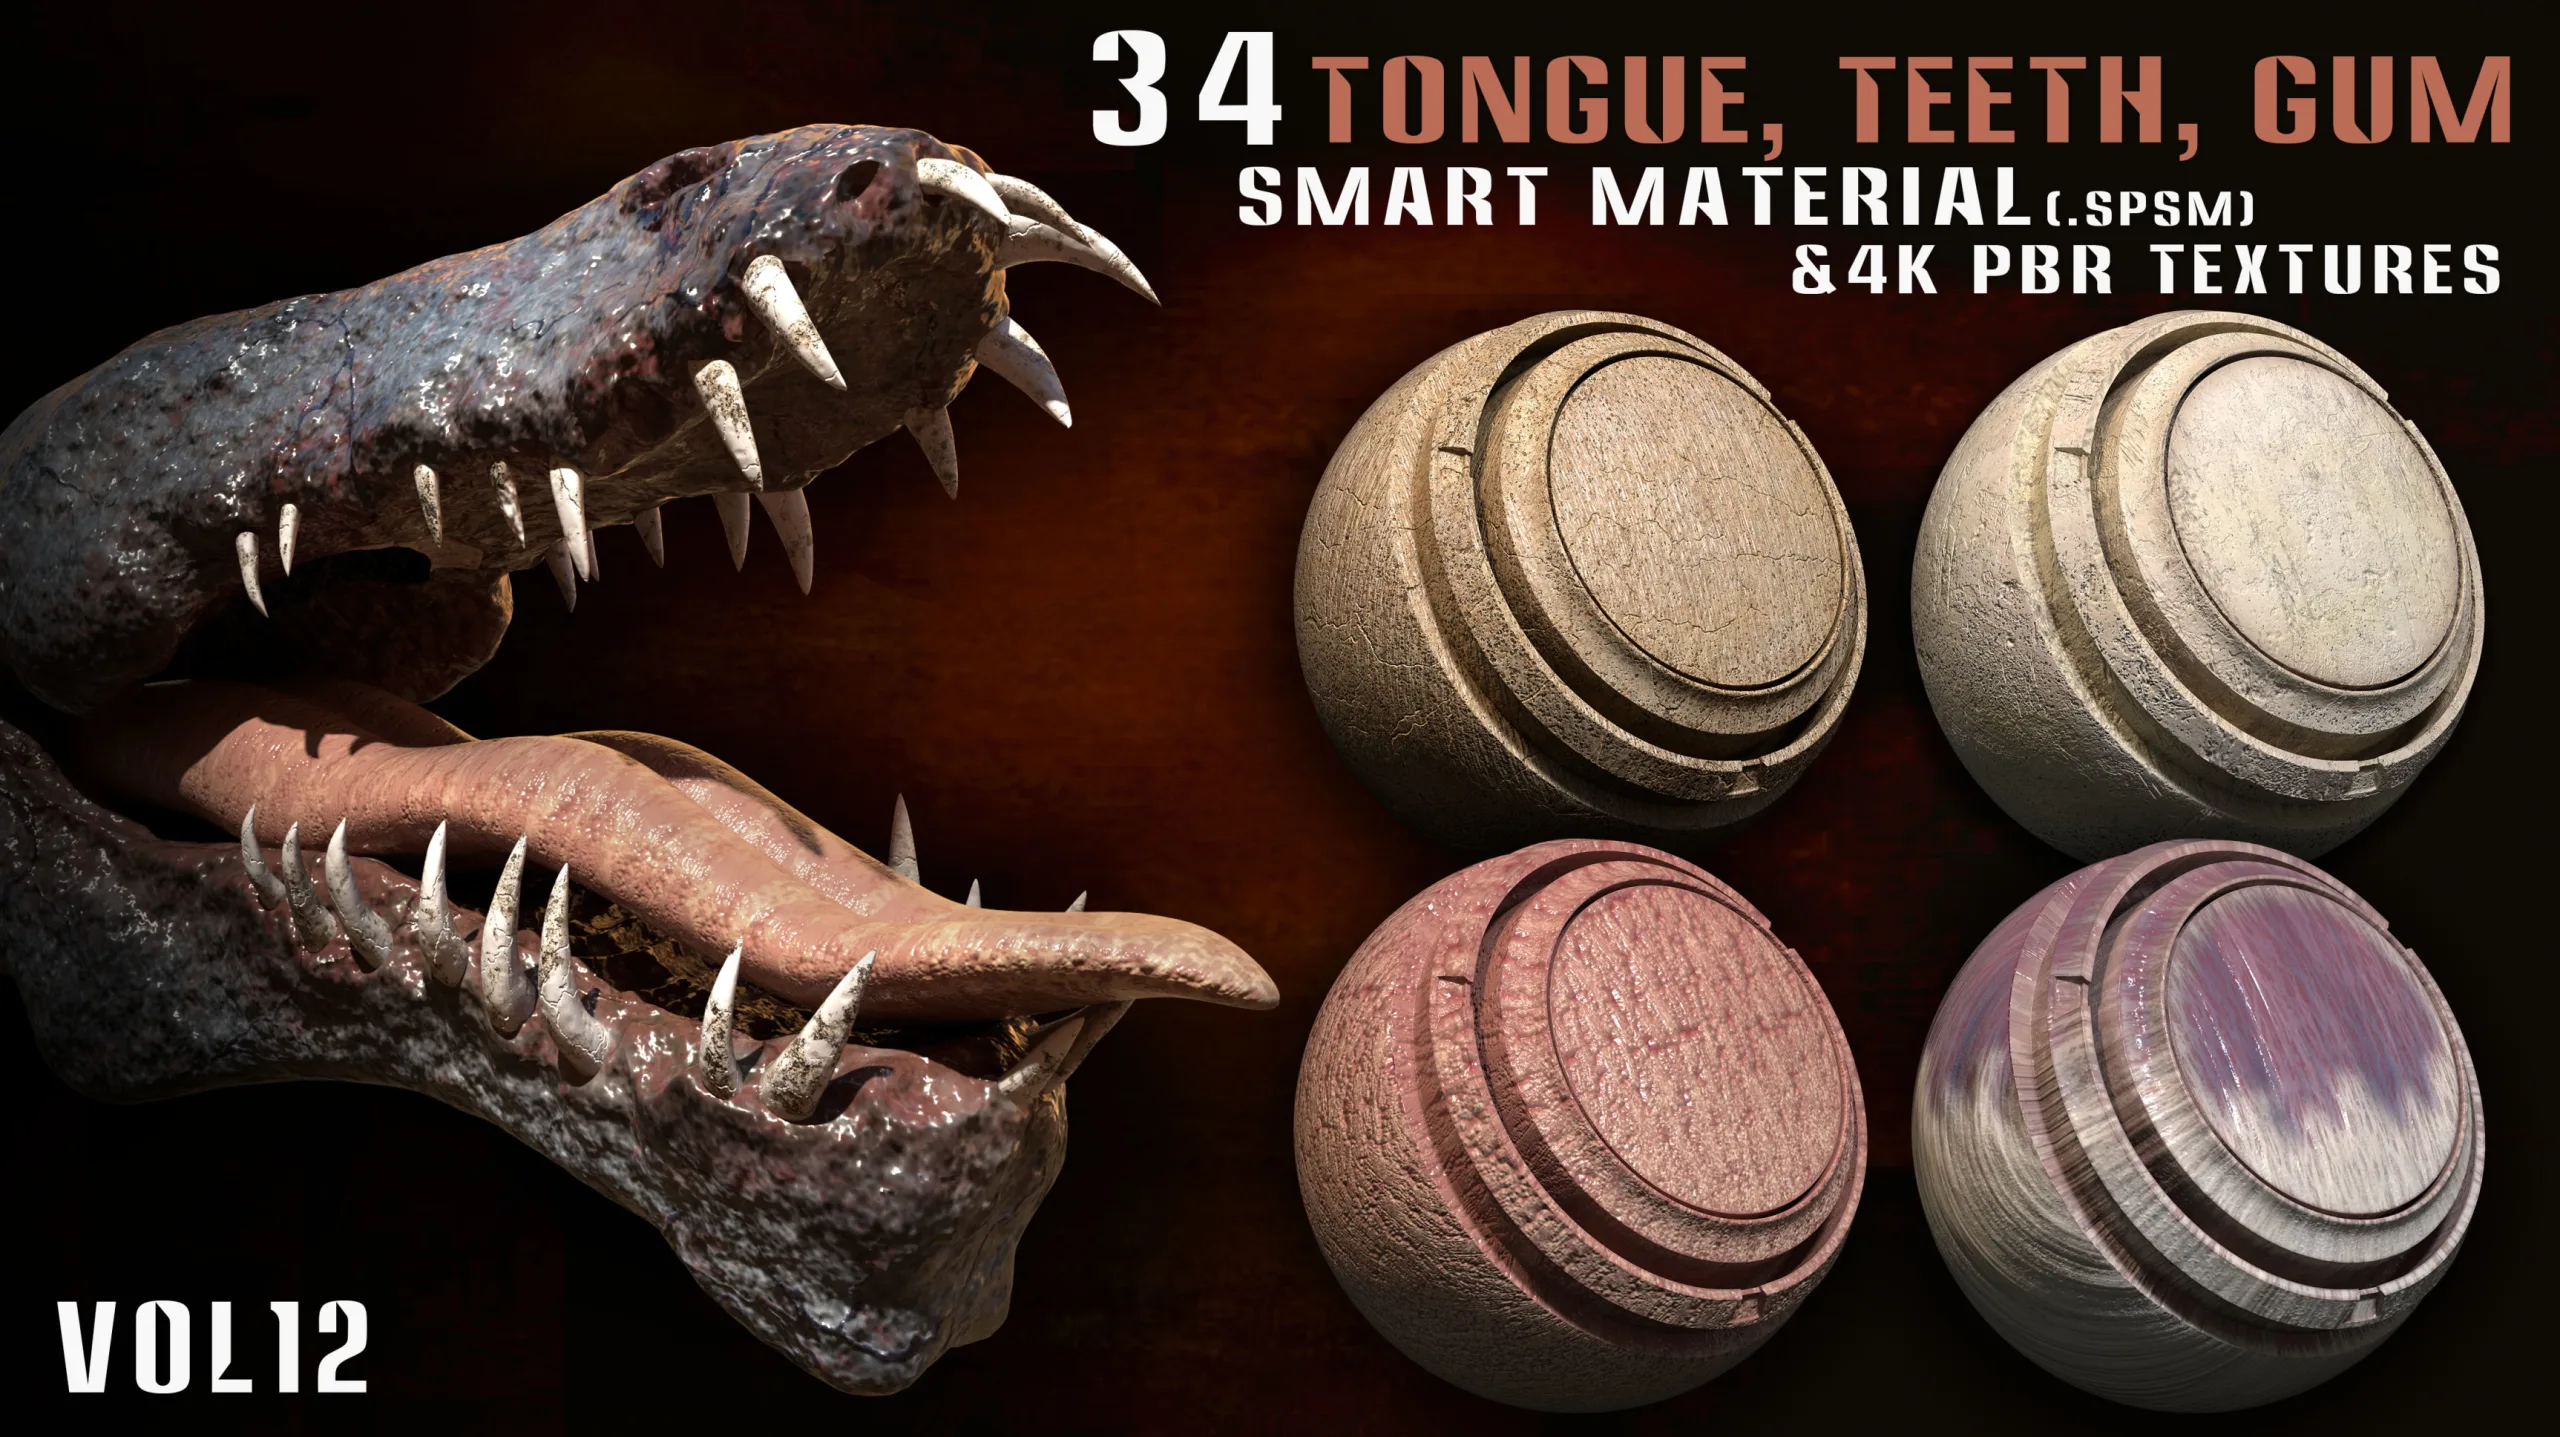 34 Tongue, Teeth, Gum Smart Material and 4k PBR Textures - vol12